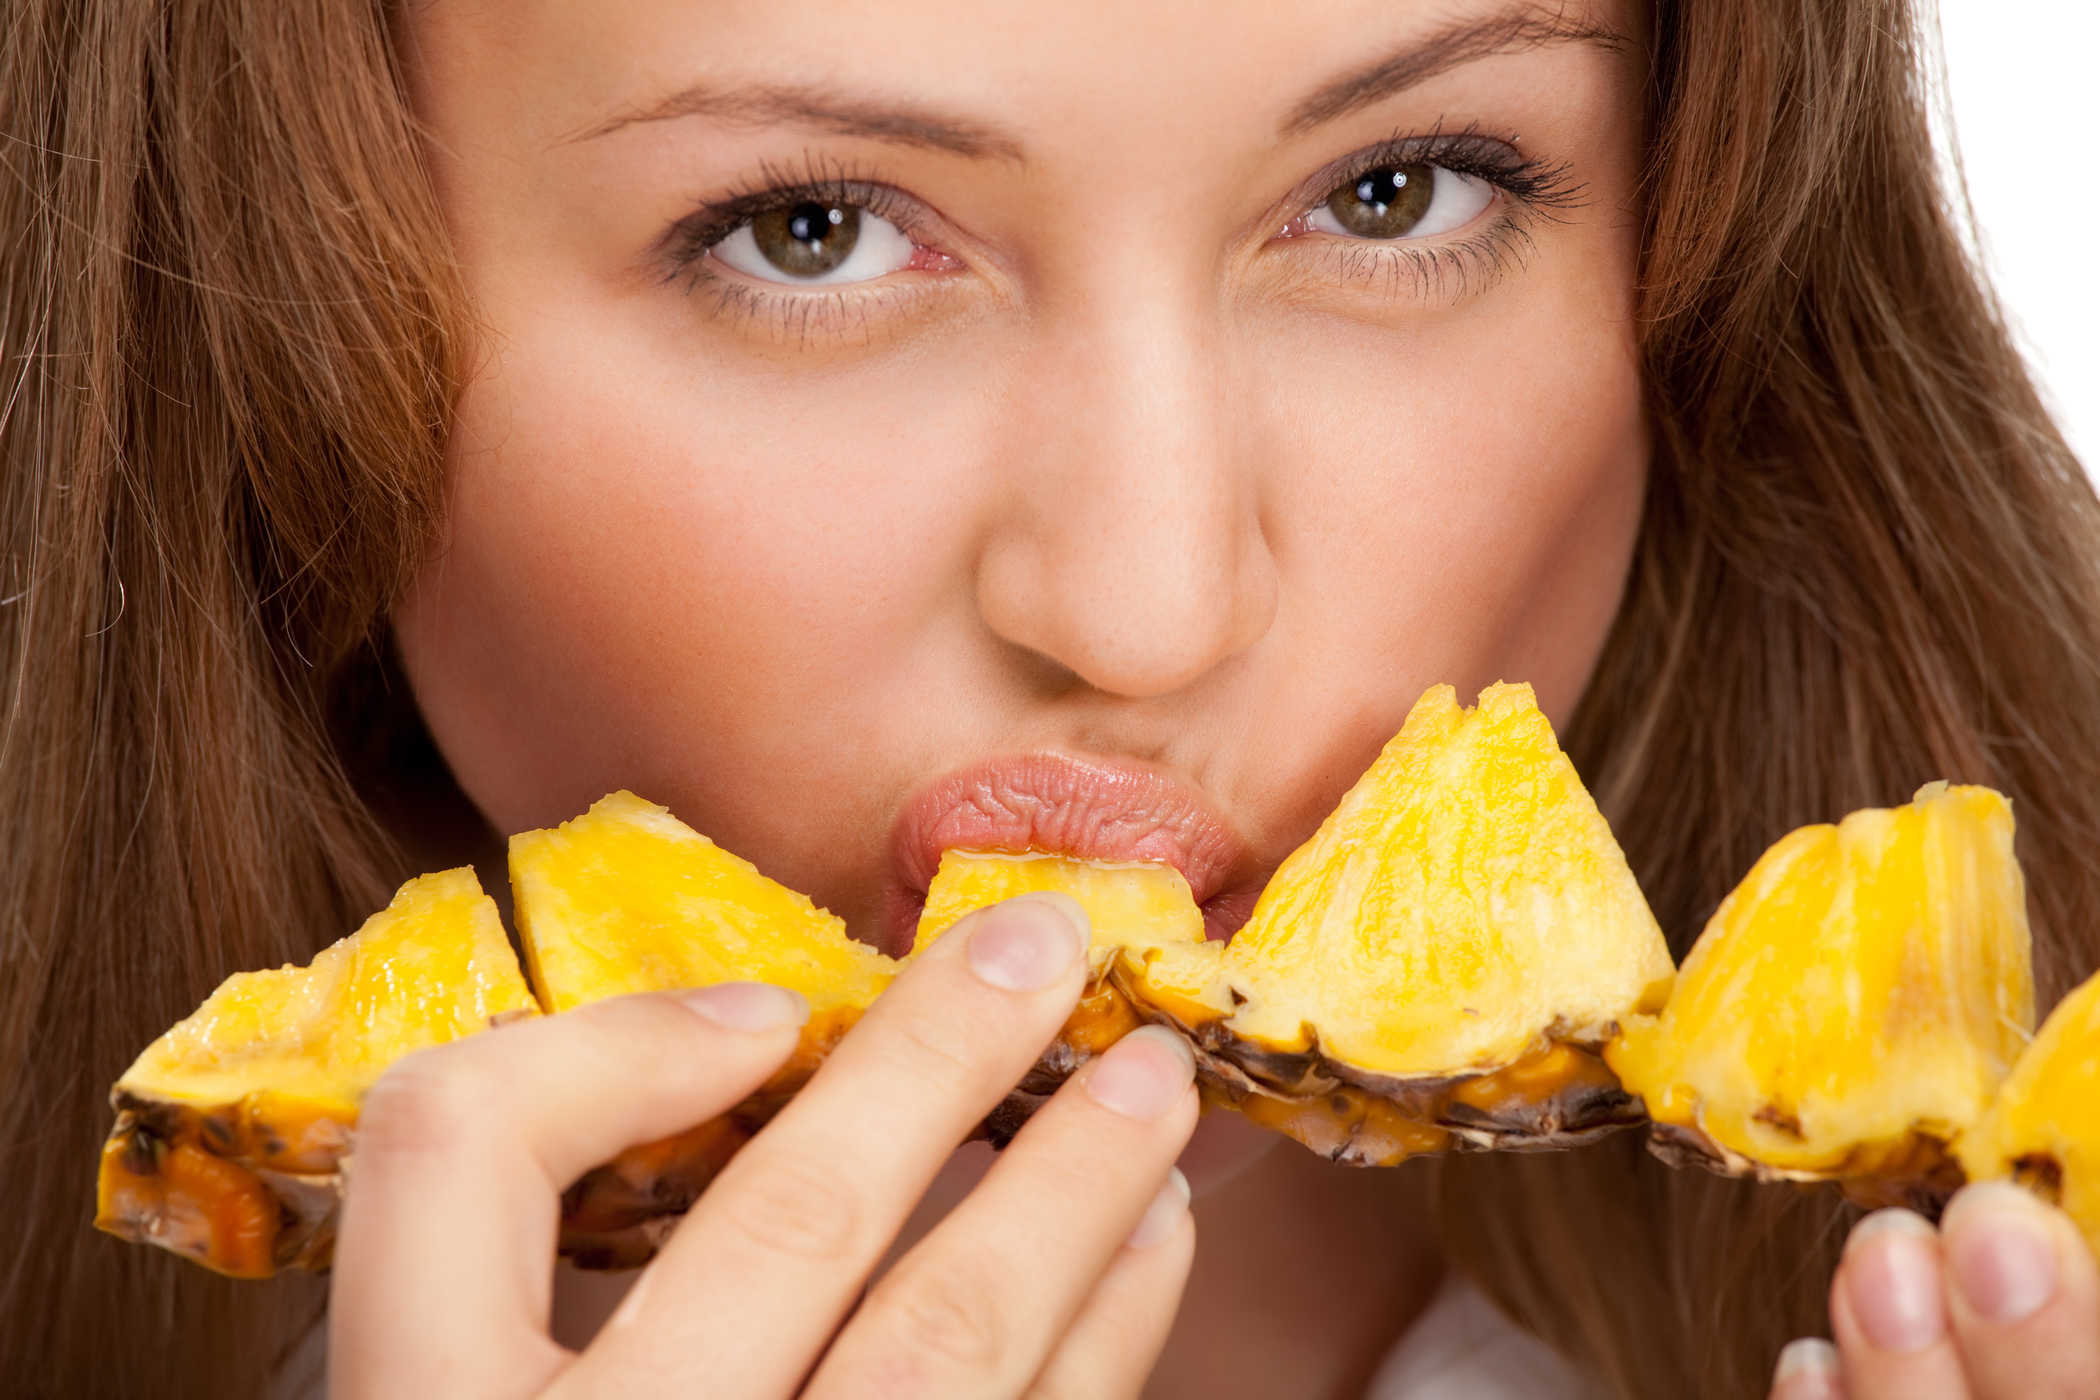 Mangiare ananas rende davvero la tua vagina così dolce?